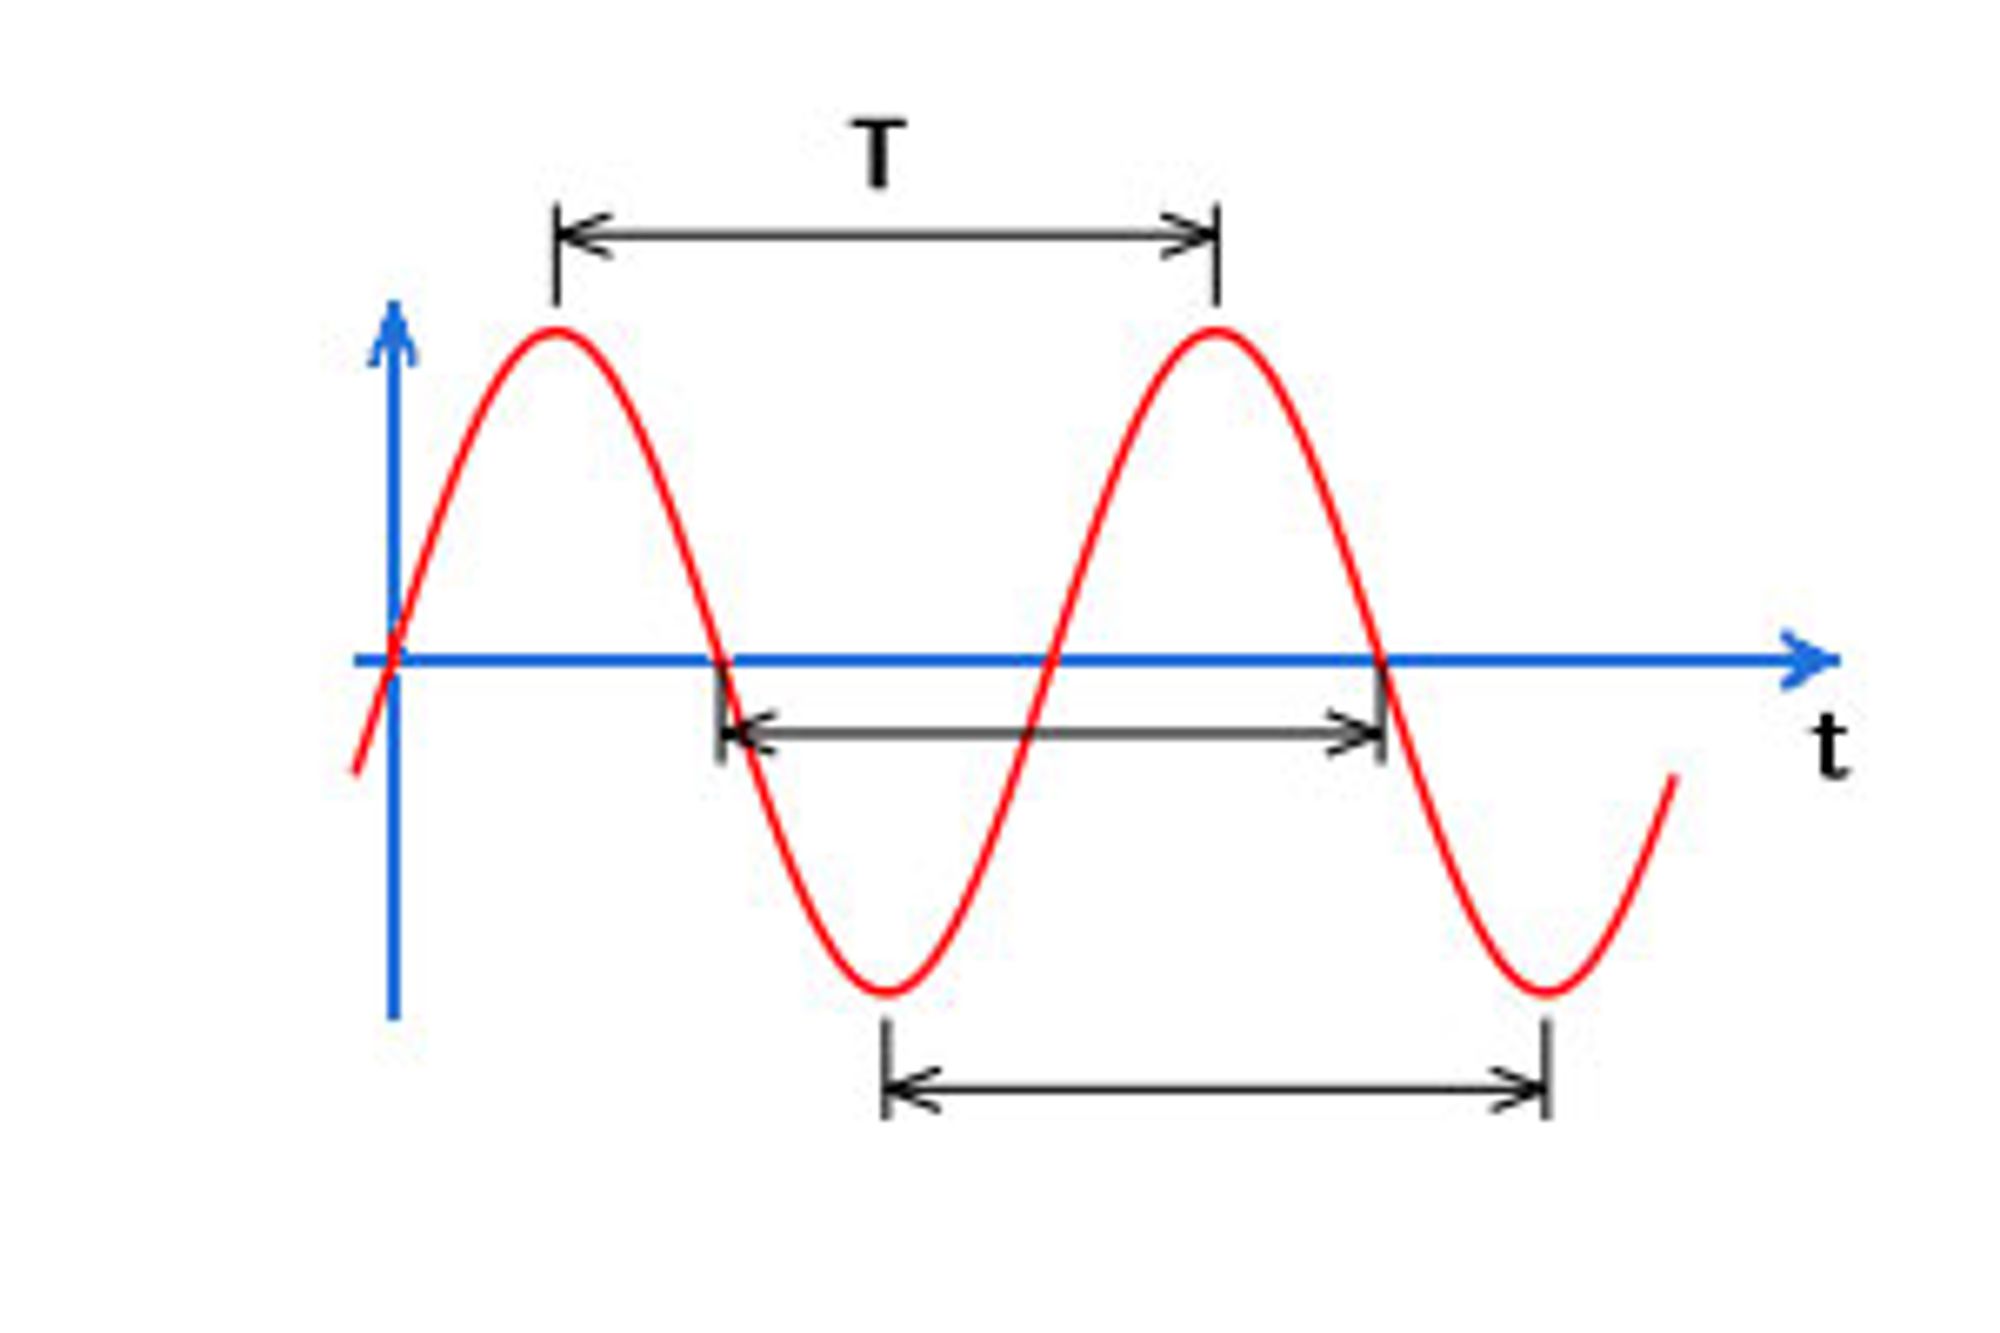 신호의 개념 - 주파수 frequency, dB, dBm, wavelength, Impedance matching, skin effect